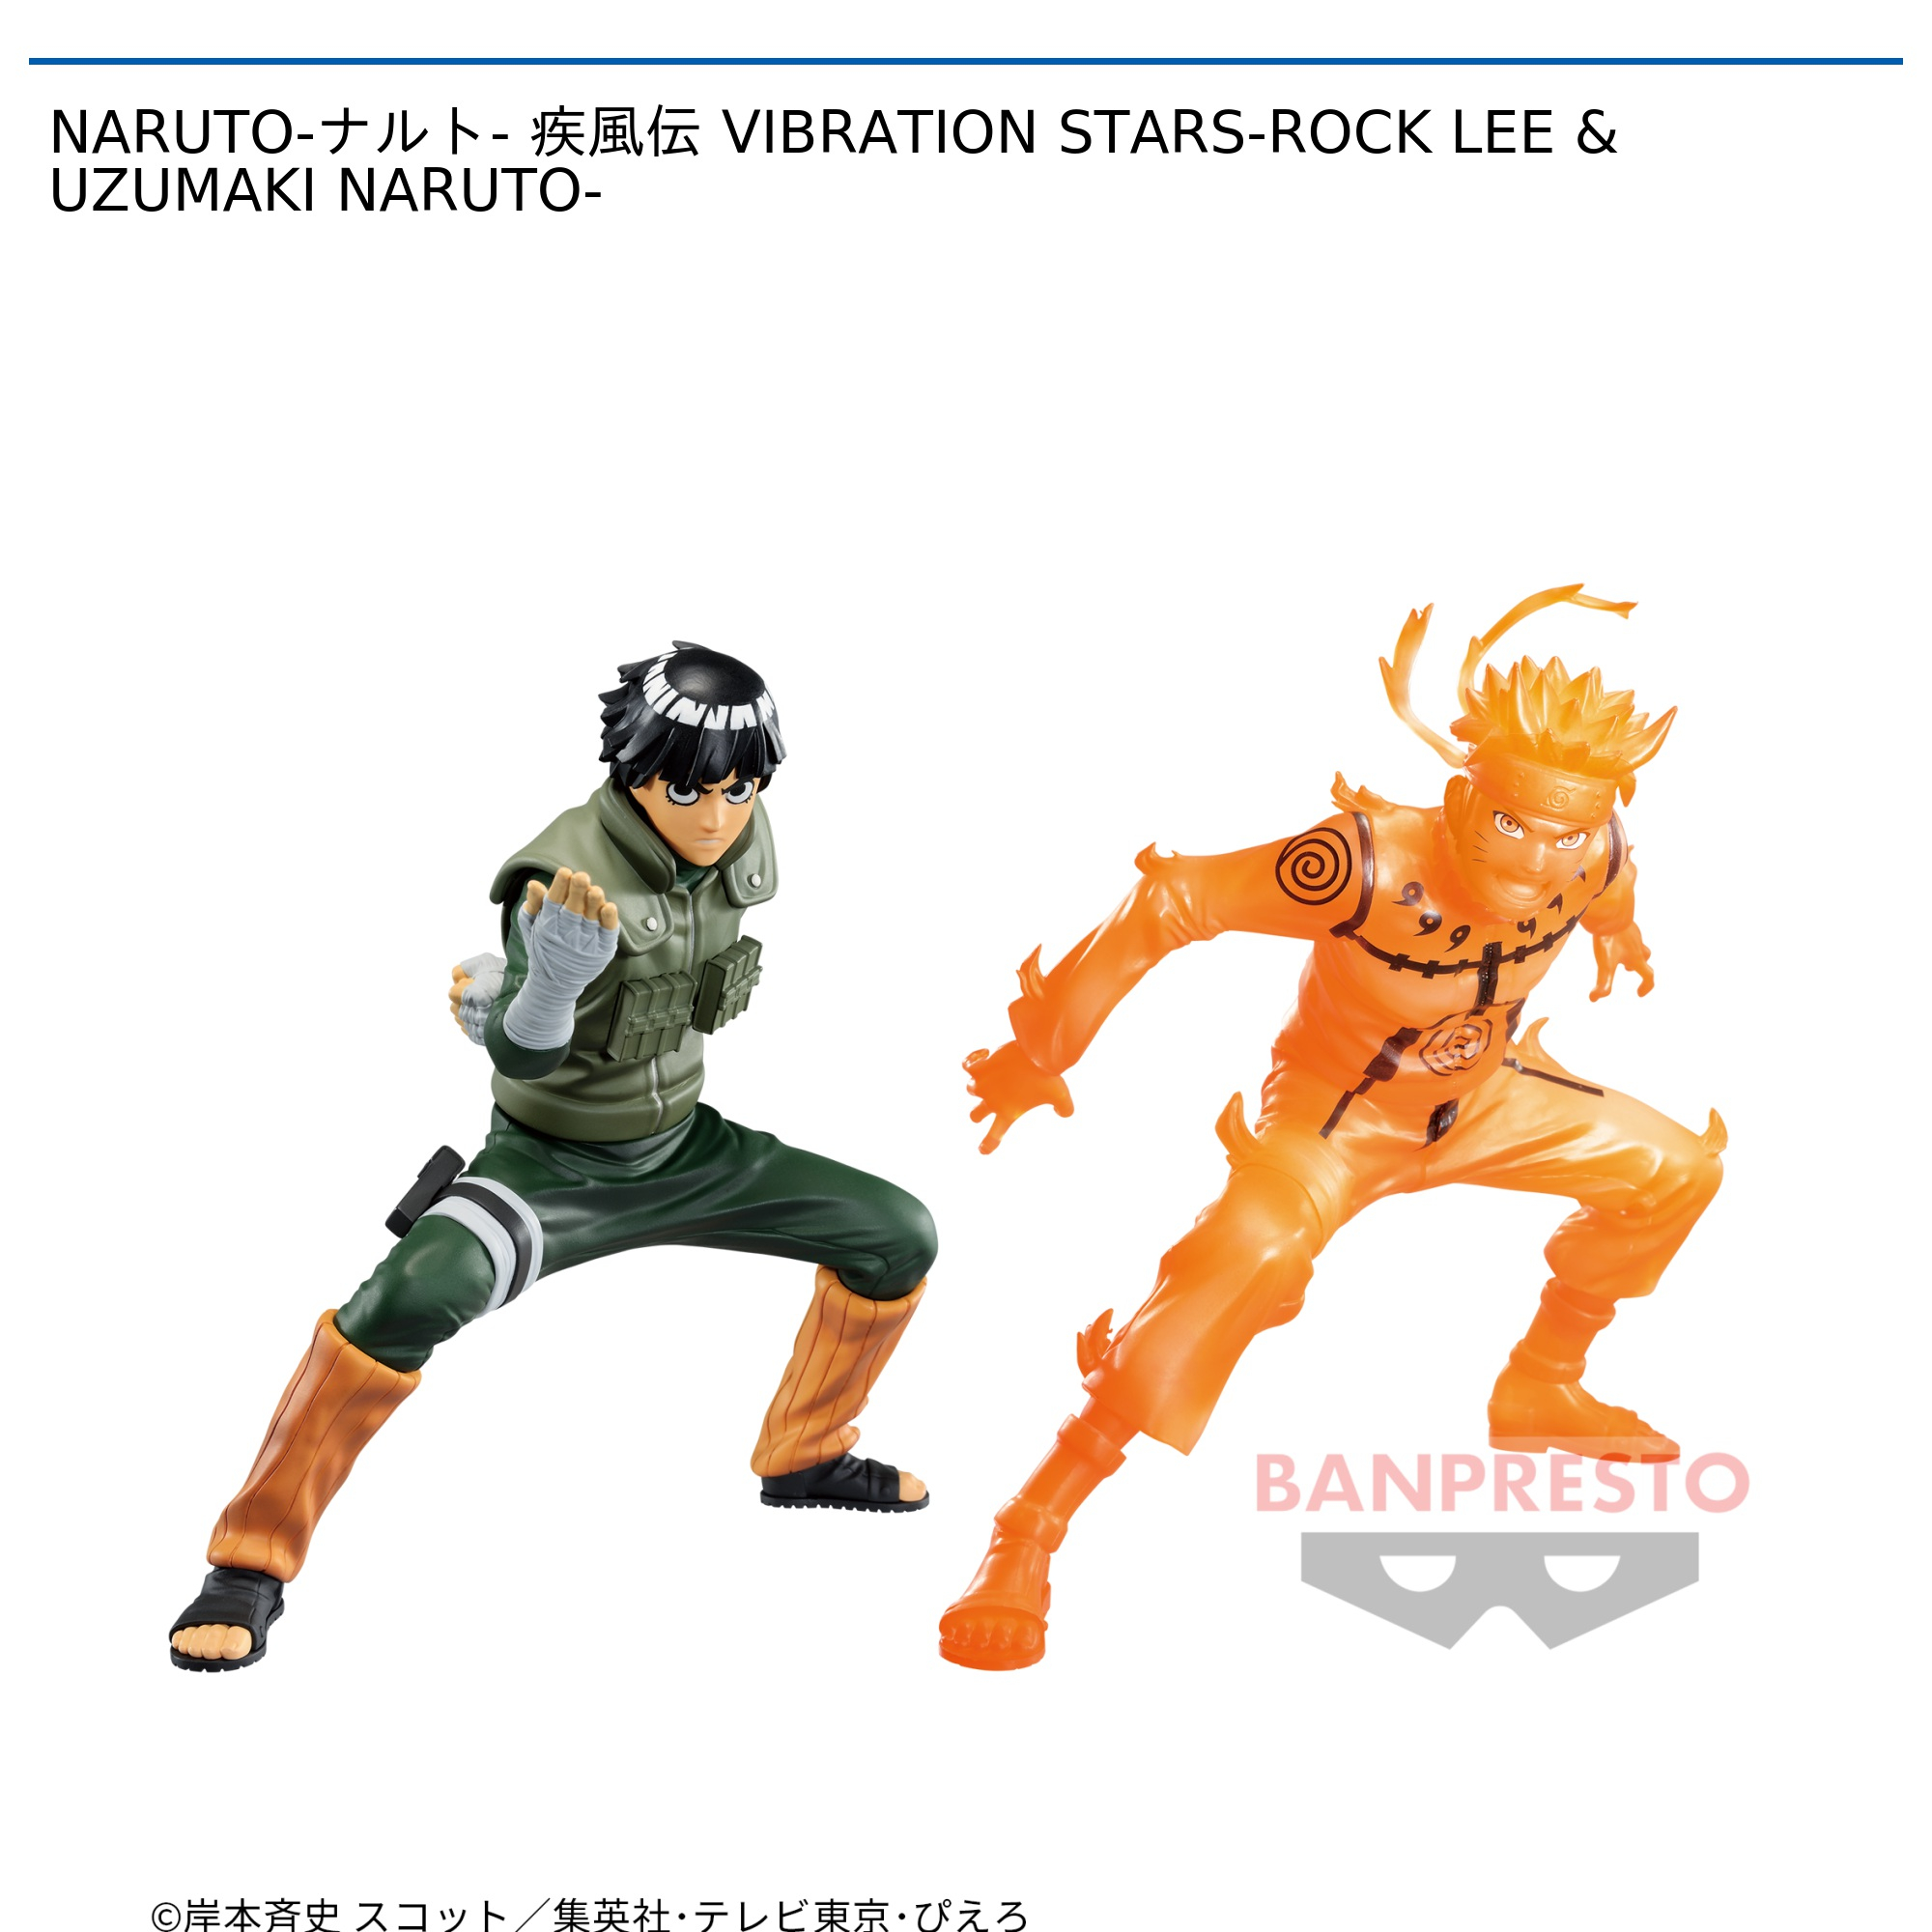 NARUTO-ナルト- 疾風伝 VIBRATION STARS-ROCK LEE & UZUMAKI NARUTO-